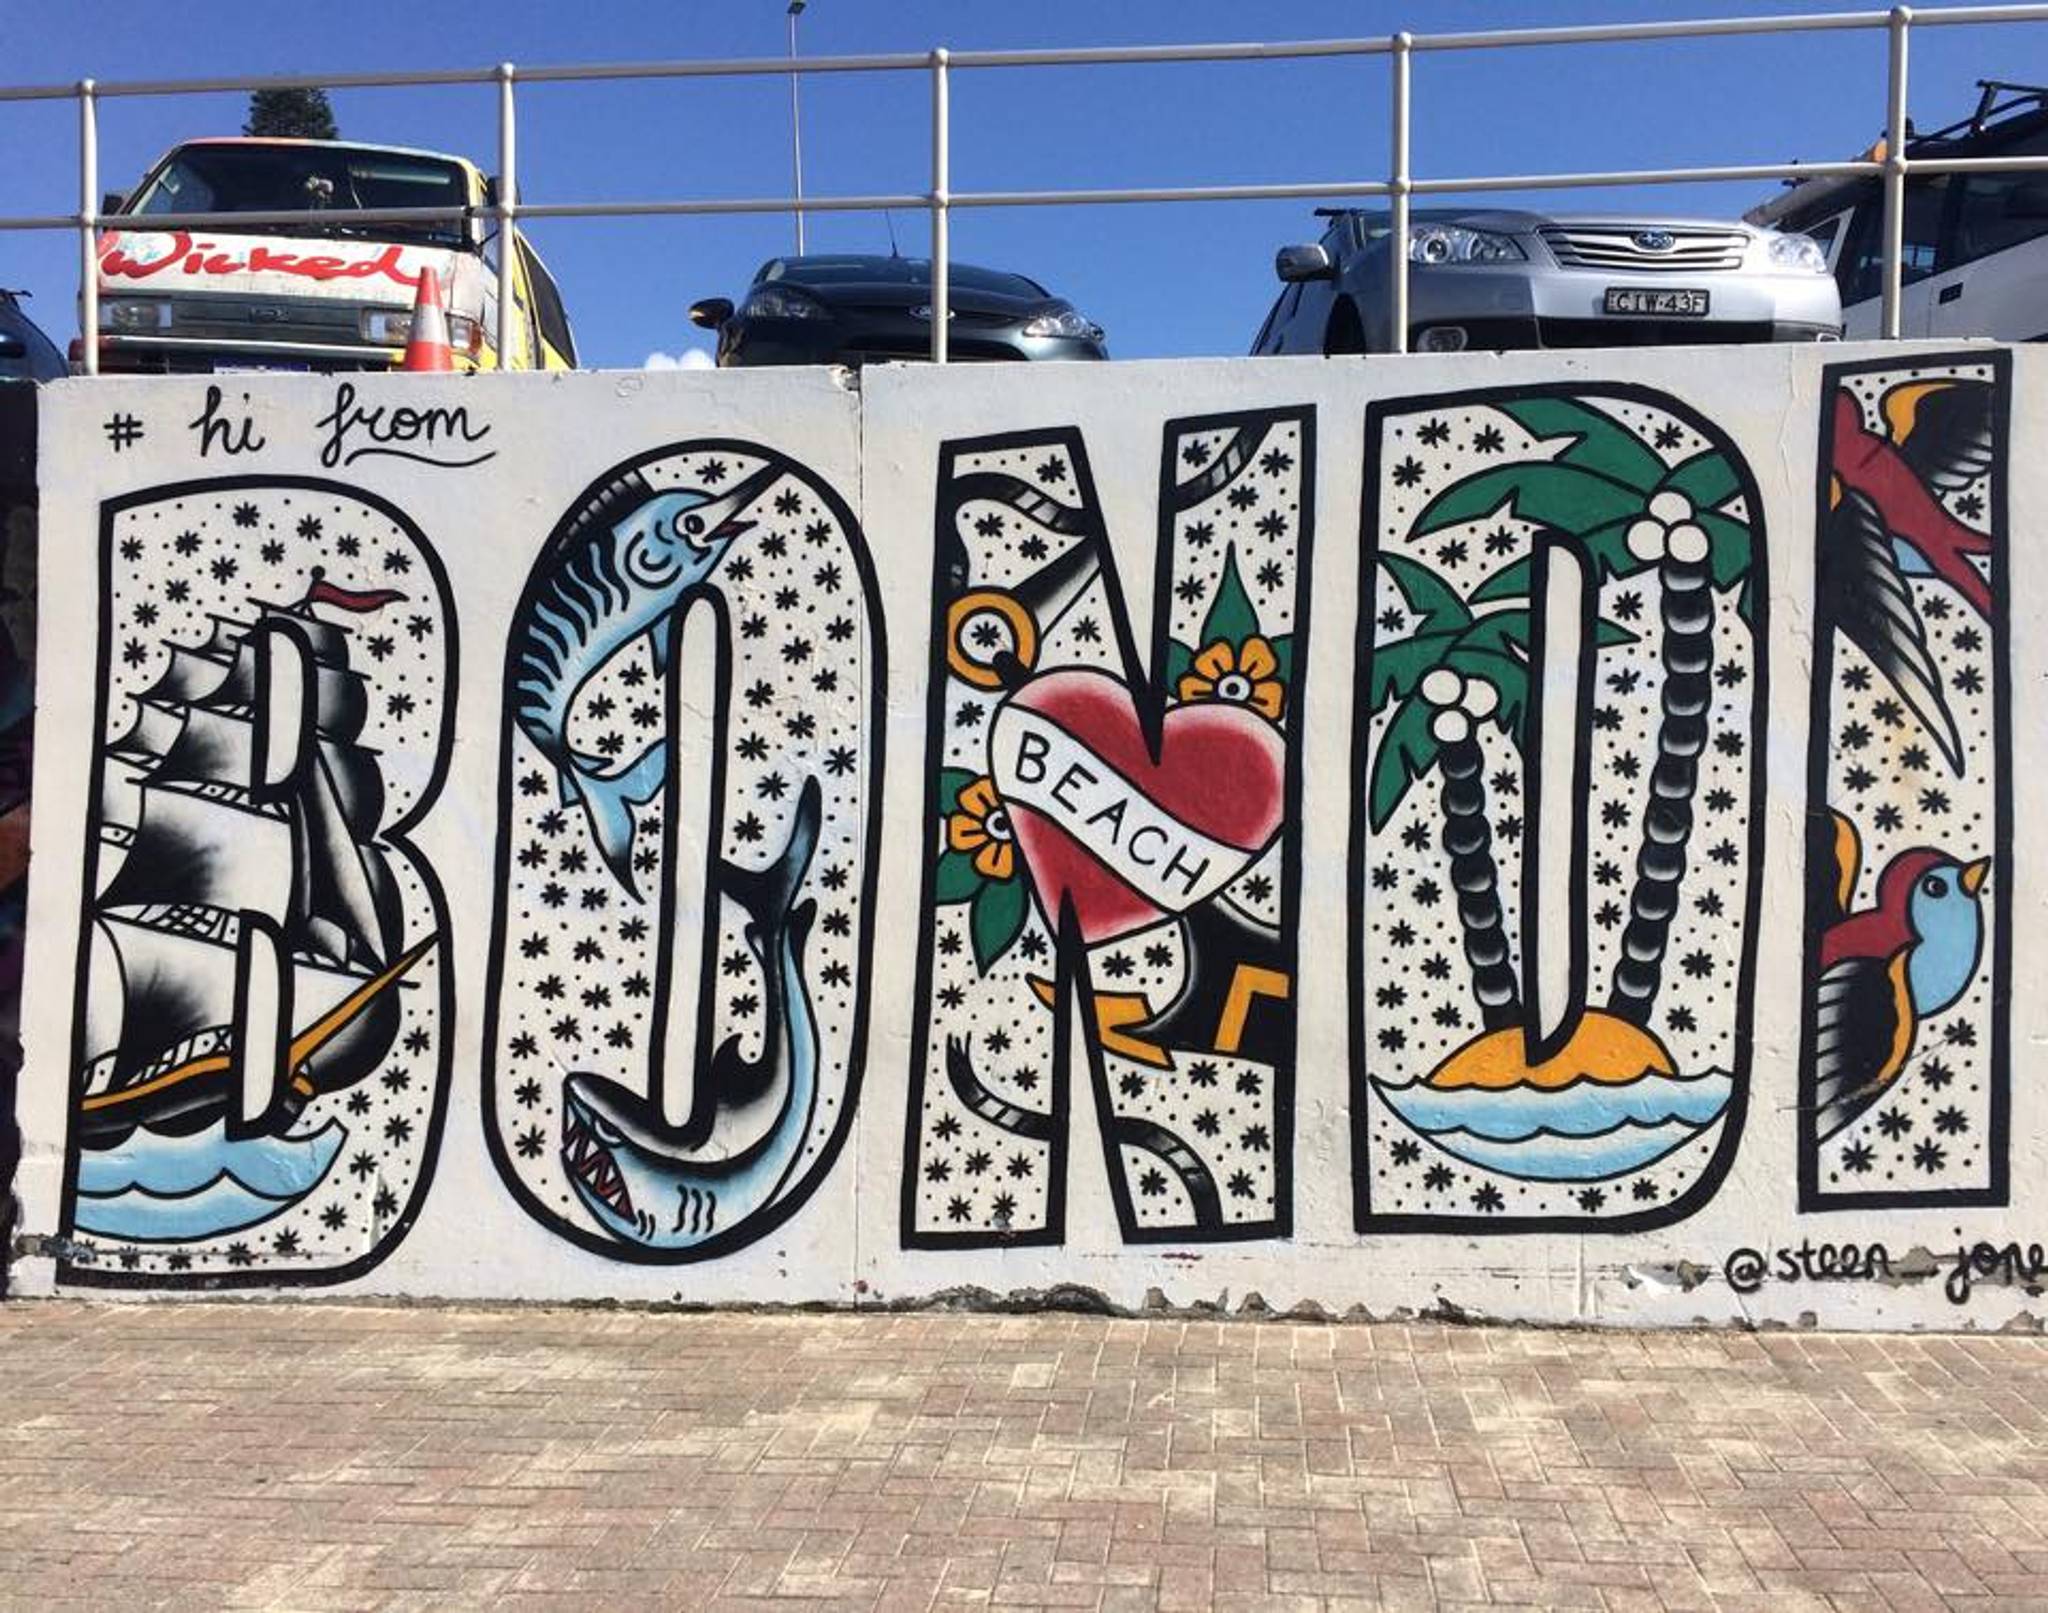 &mdash;Bondi Beach Graffiti Wall